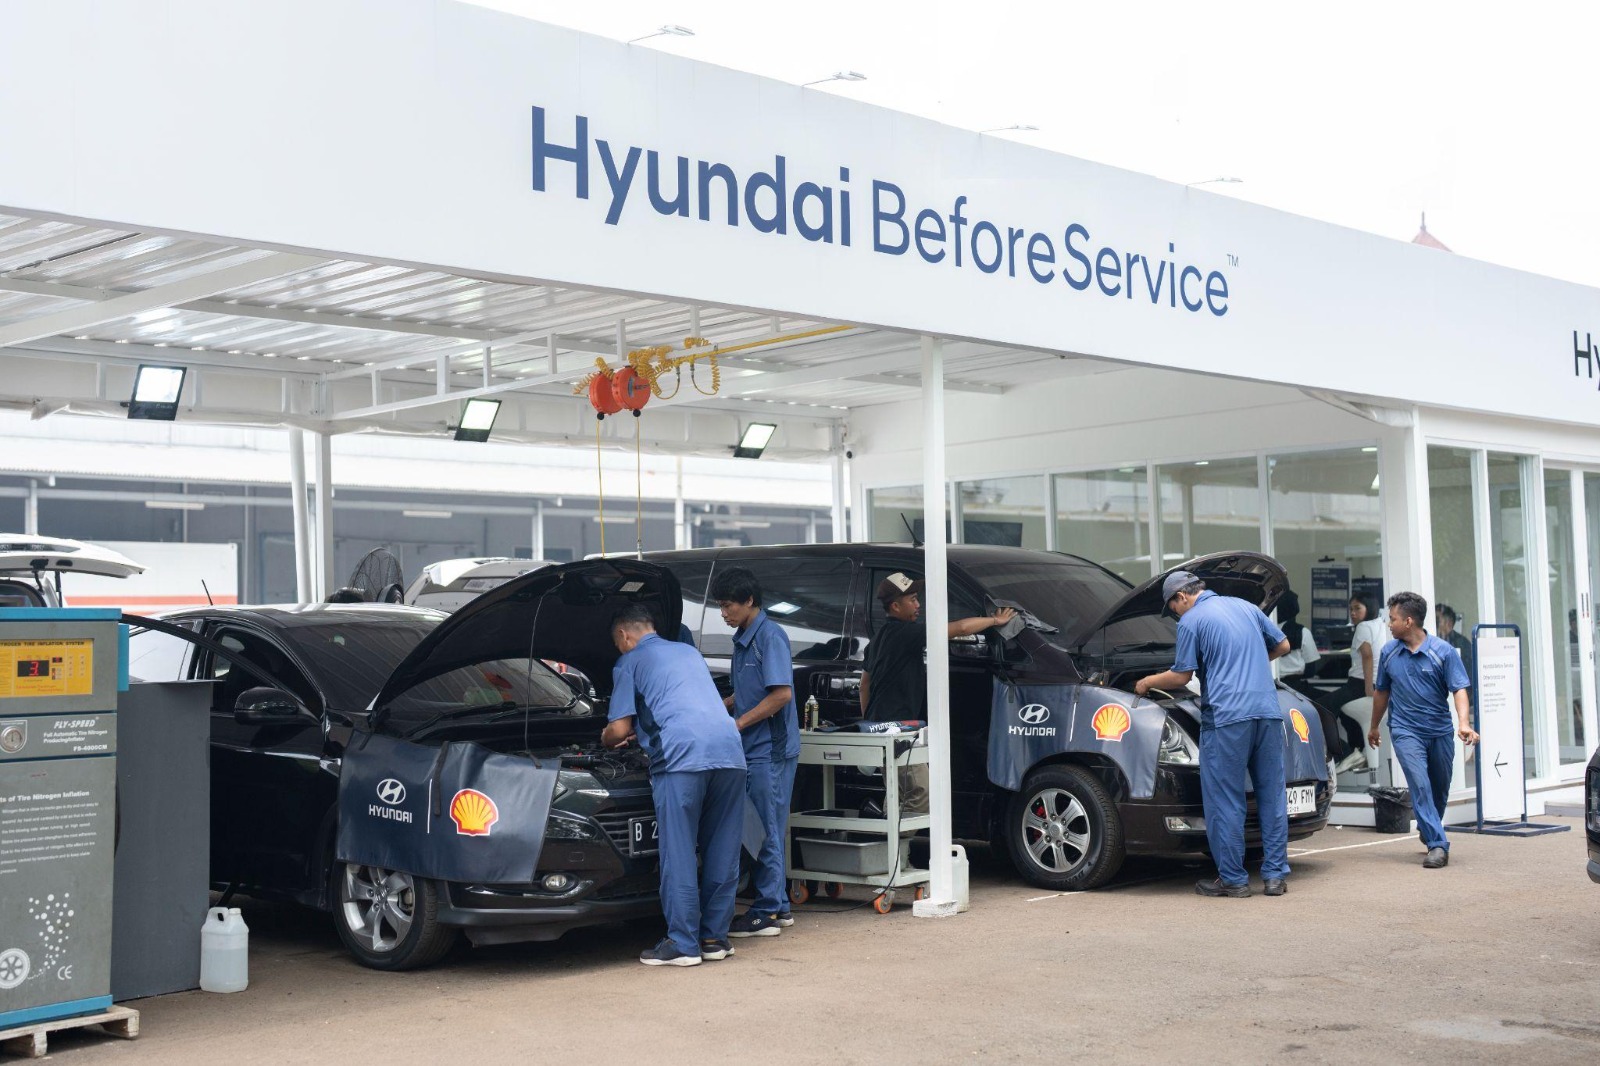 Cukup Ikuti Program Trade-In Bisa Bawa Pulang Mobil Hyundai Impian, Begini Caranya!